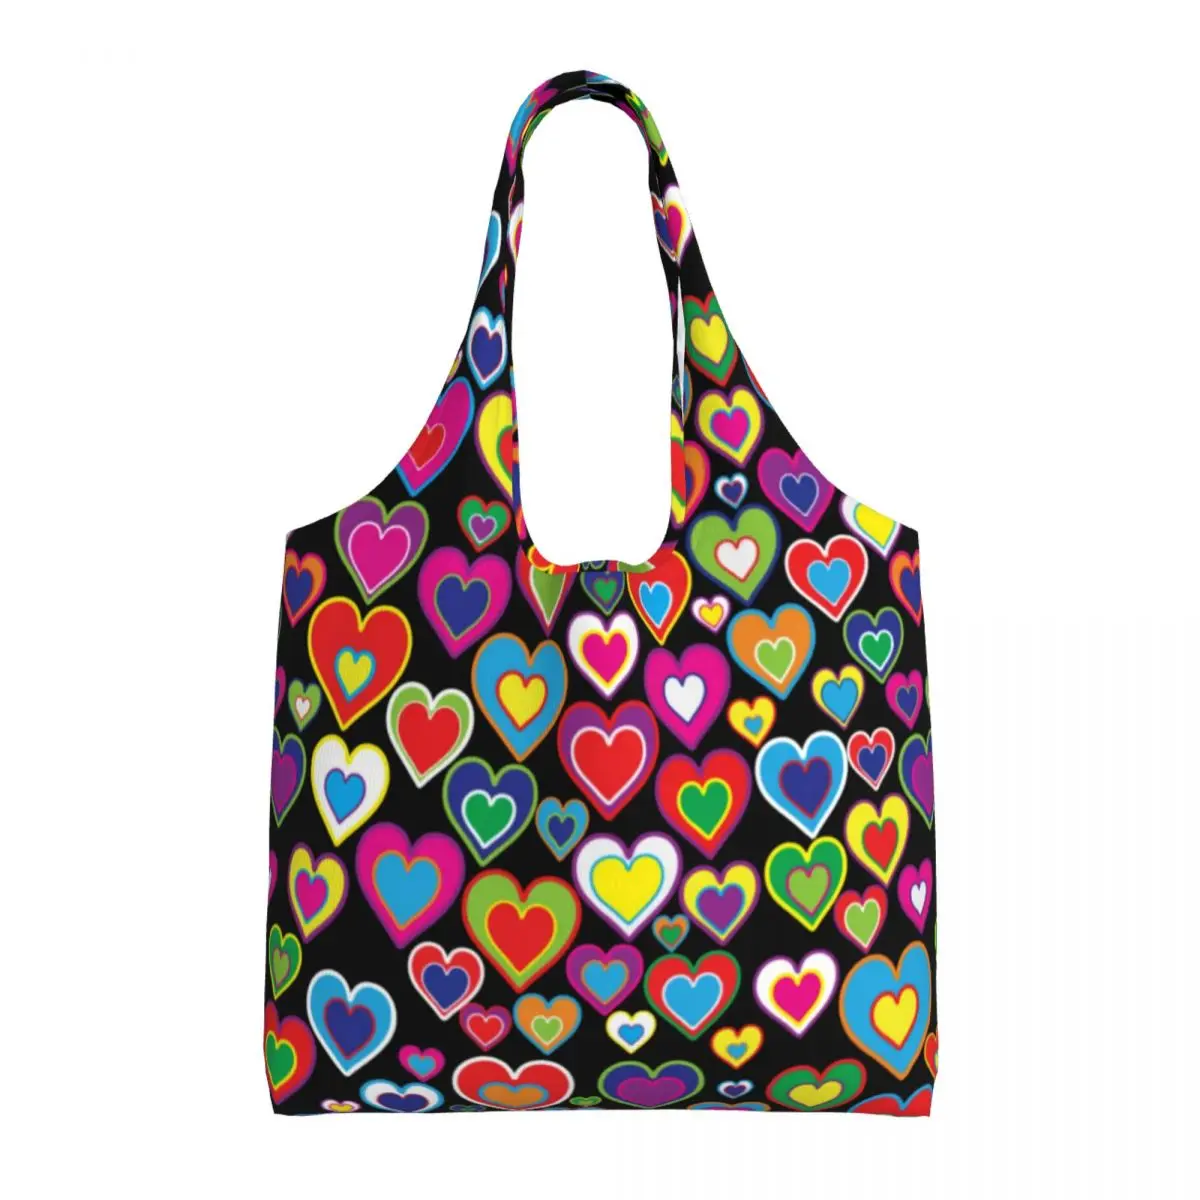 

Сумка для покупок ARainbow Of Hearts, забавная яркая Художественная печать, винтажная сумка для покупок из полиэстера, женские сумки оптом